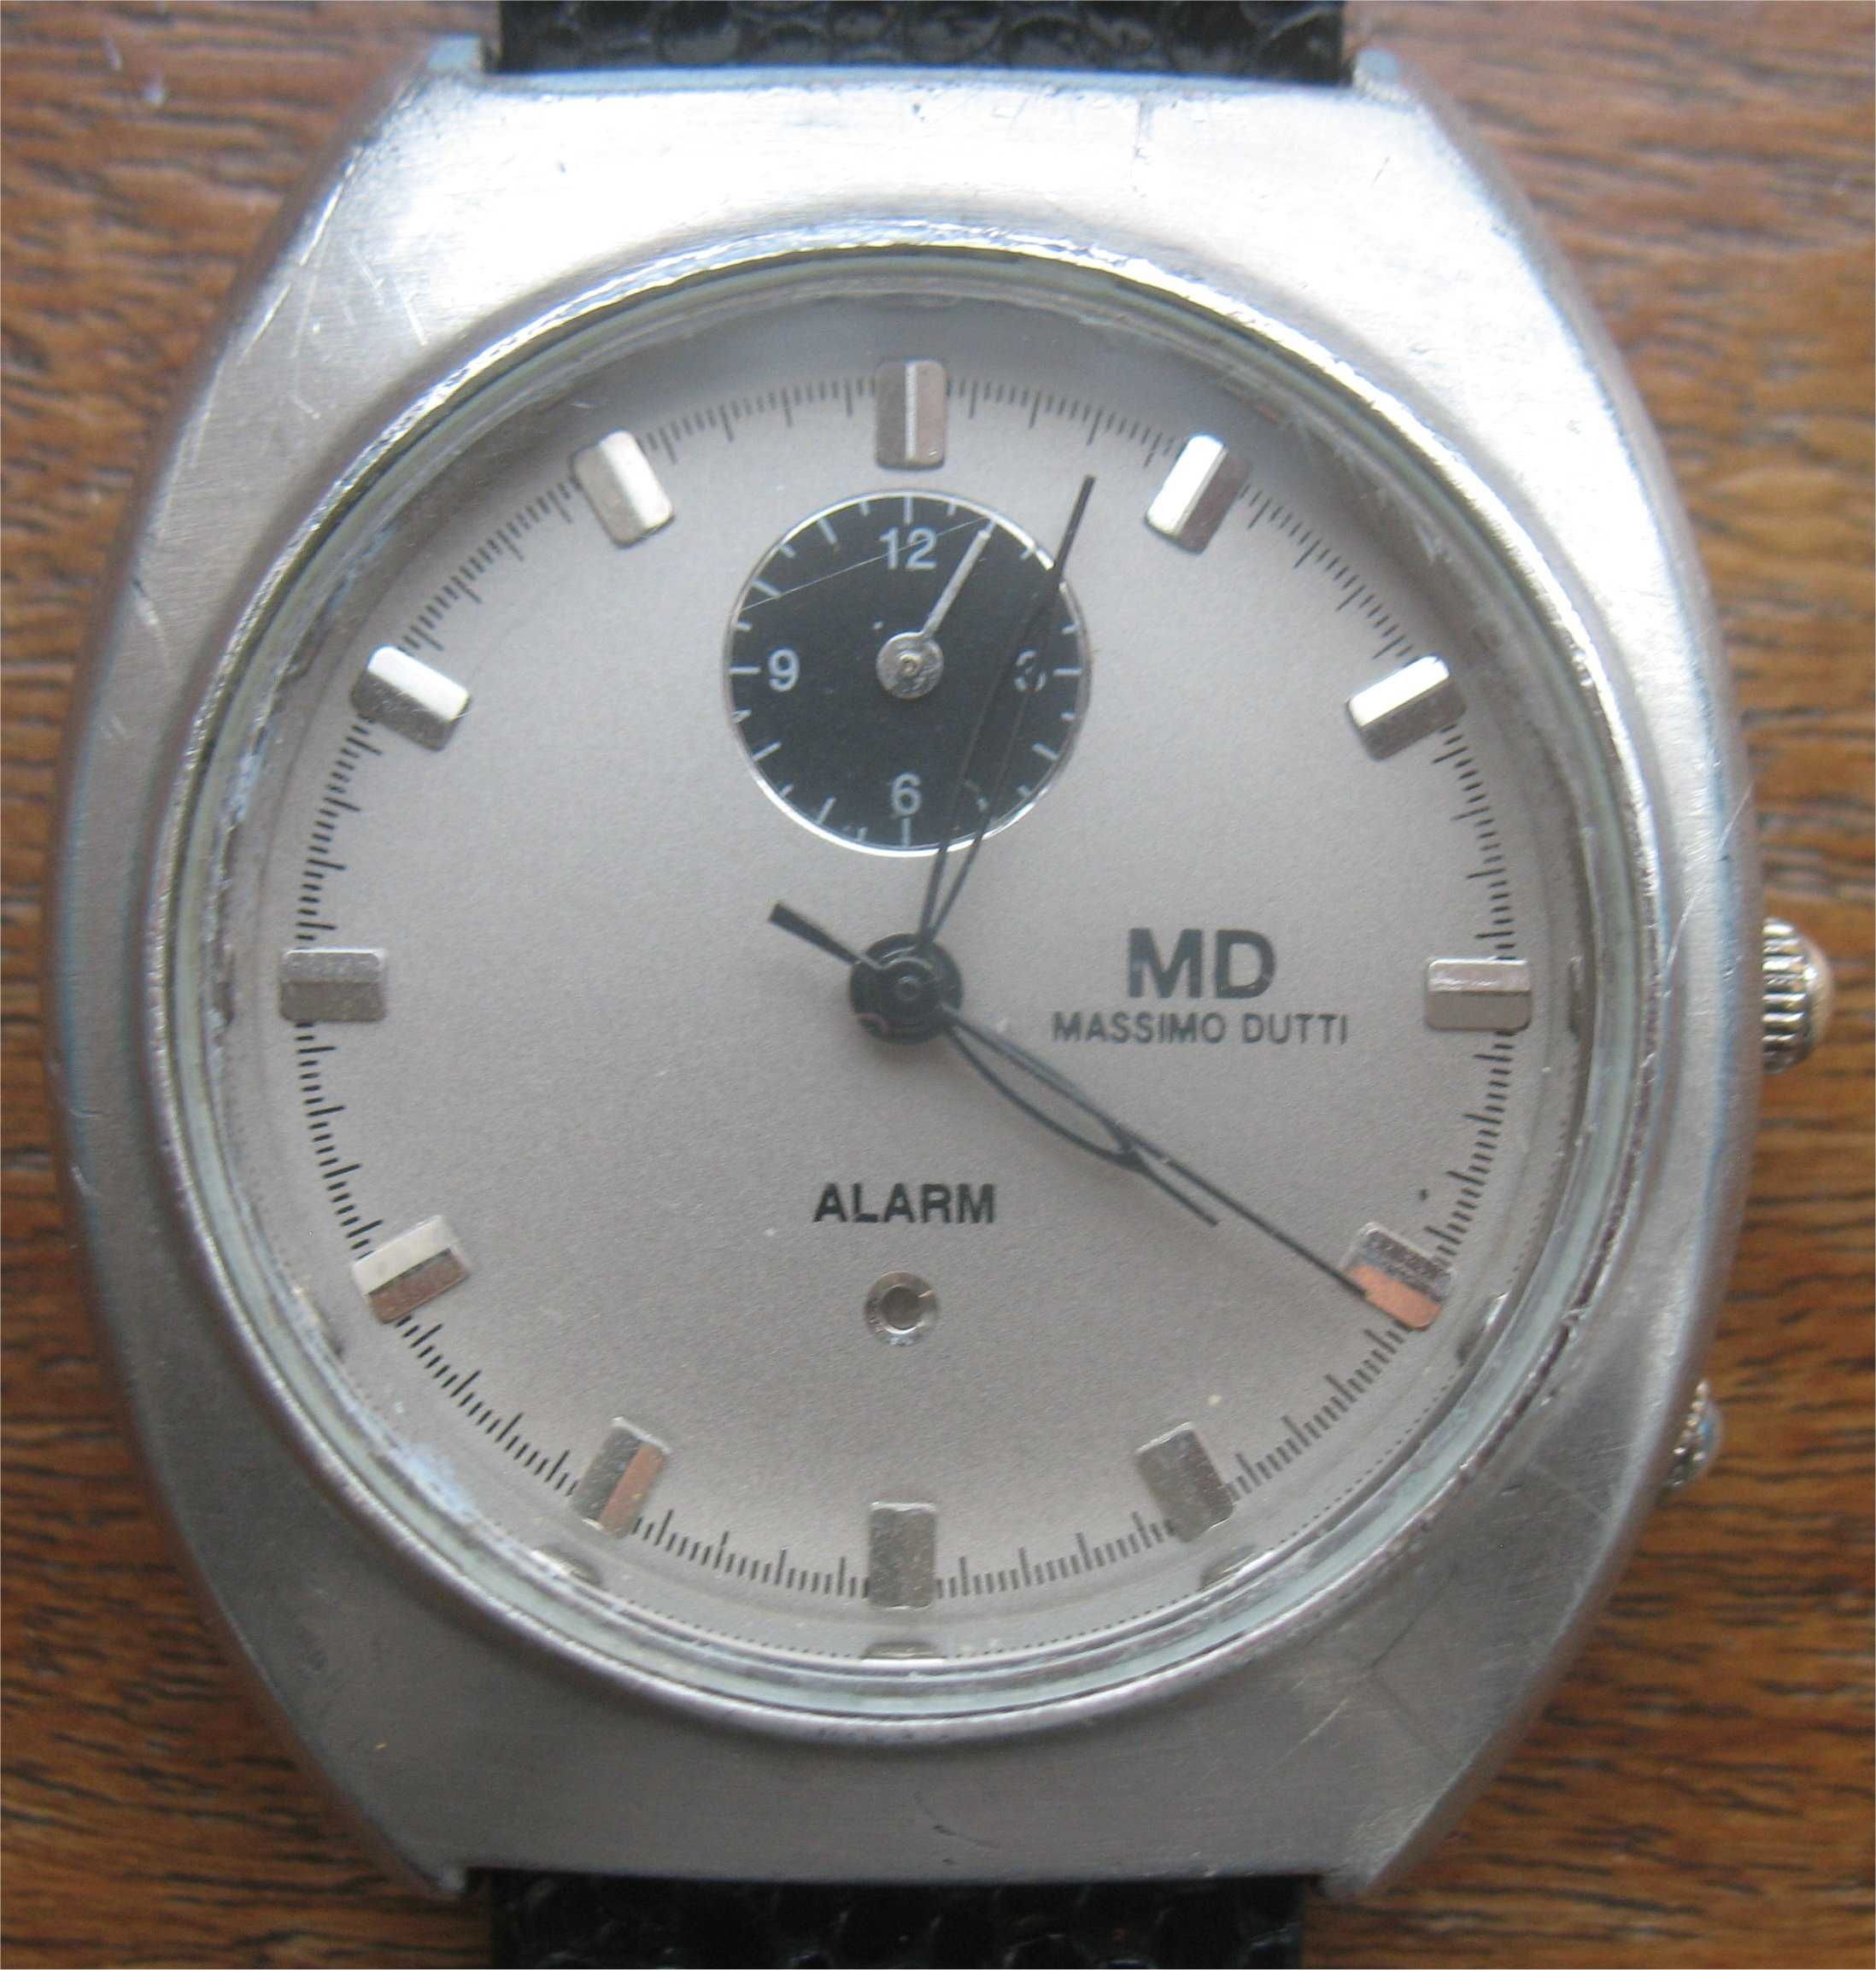 Relógio Vintage - Massimo Dutti - Alarm